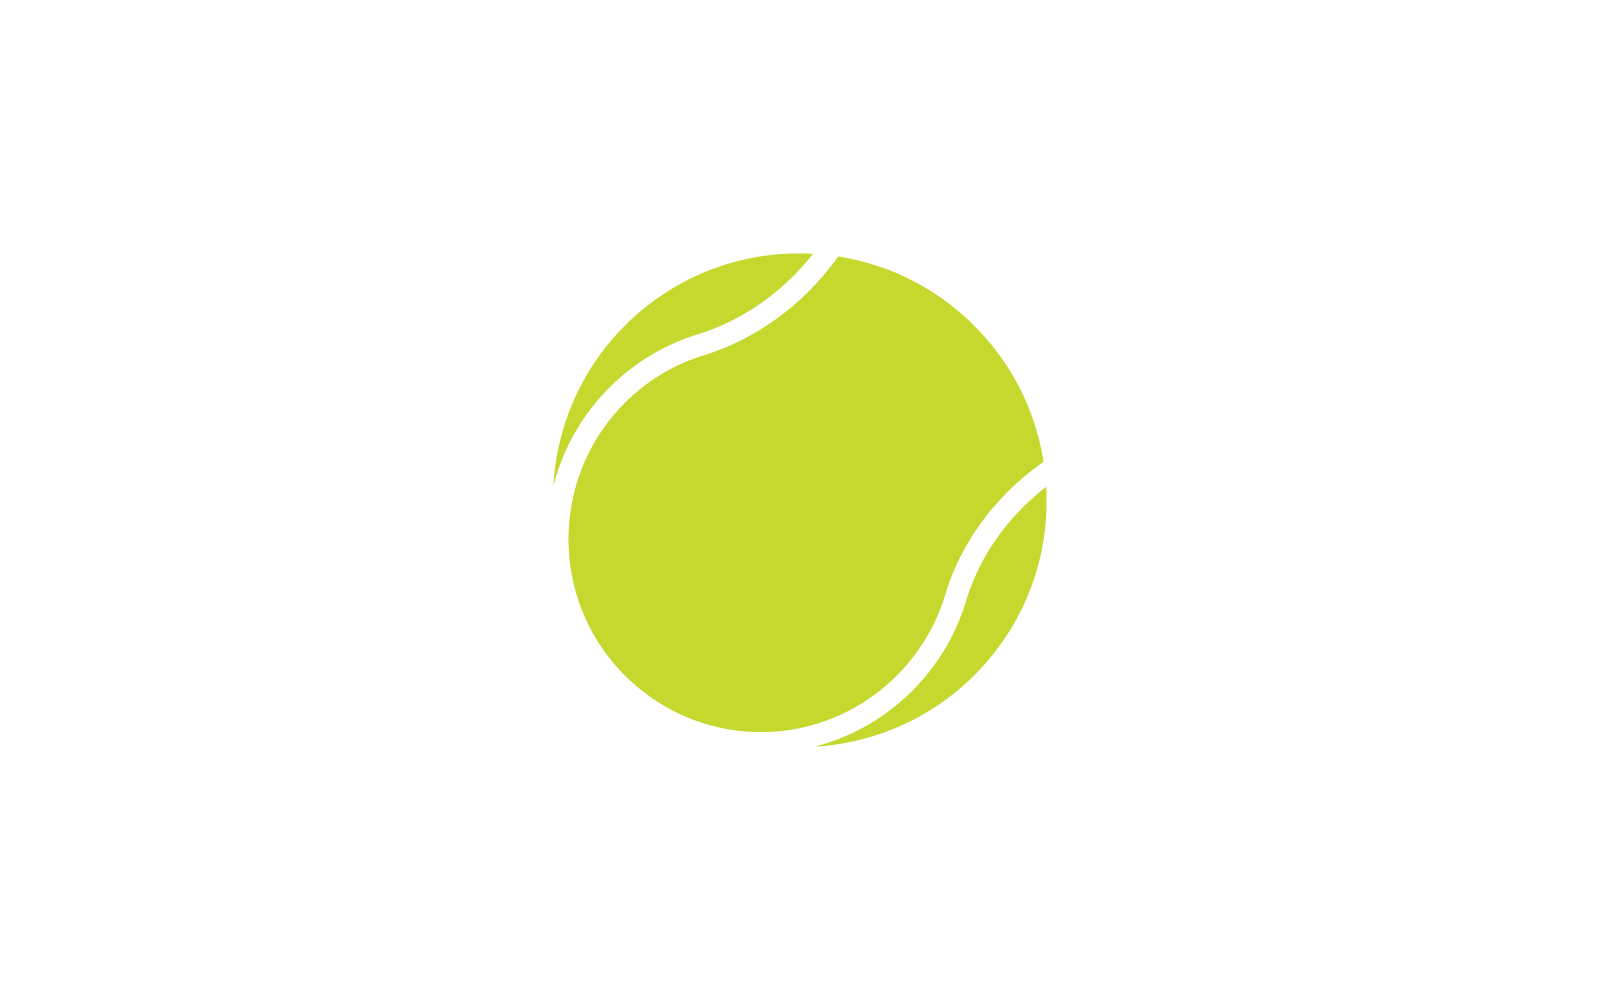 Tennis ball logo vector icon design template